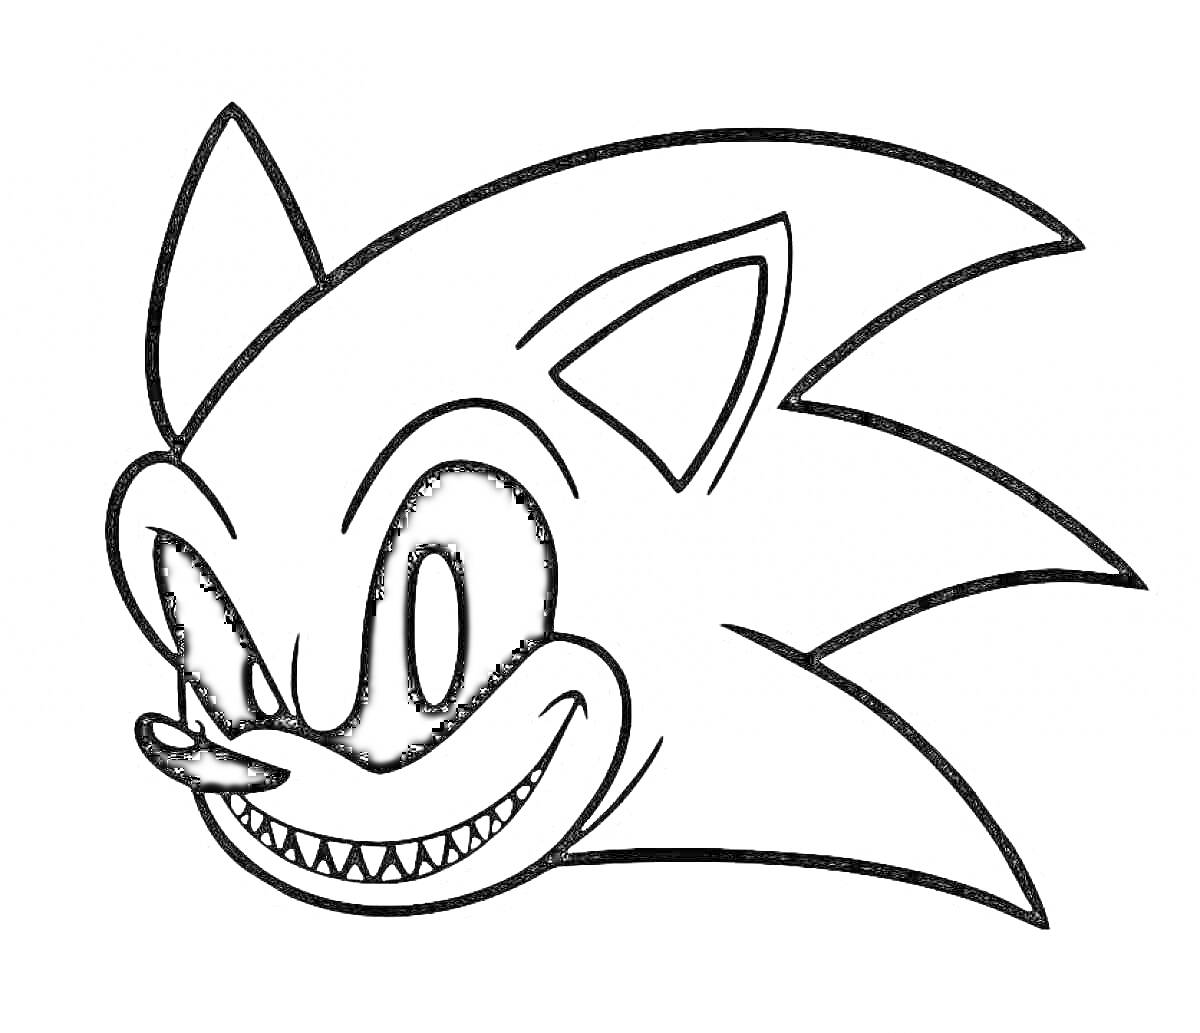 Раскраска Зловещая голова Sonic EXE с большими черными глазами, заостренными ушами и широкой ухмылкой с острыми зубами